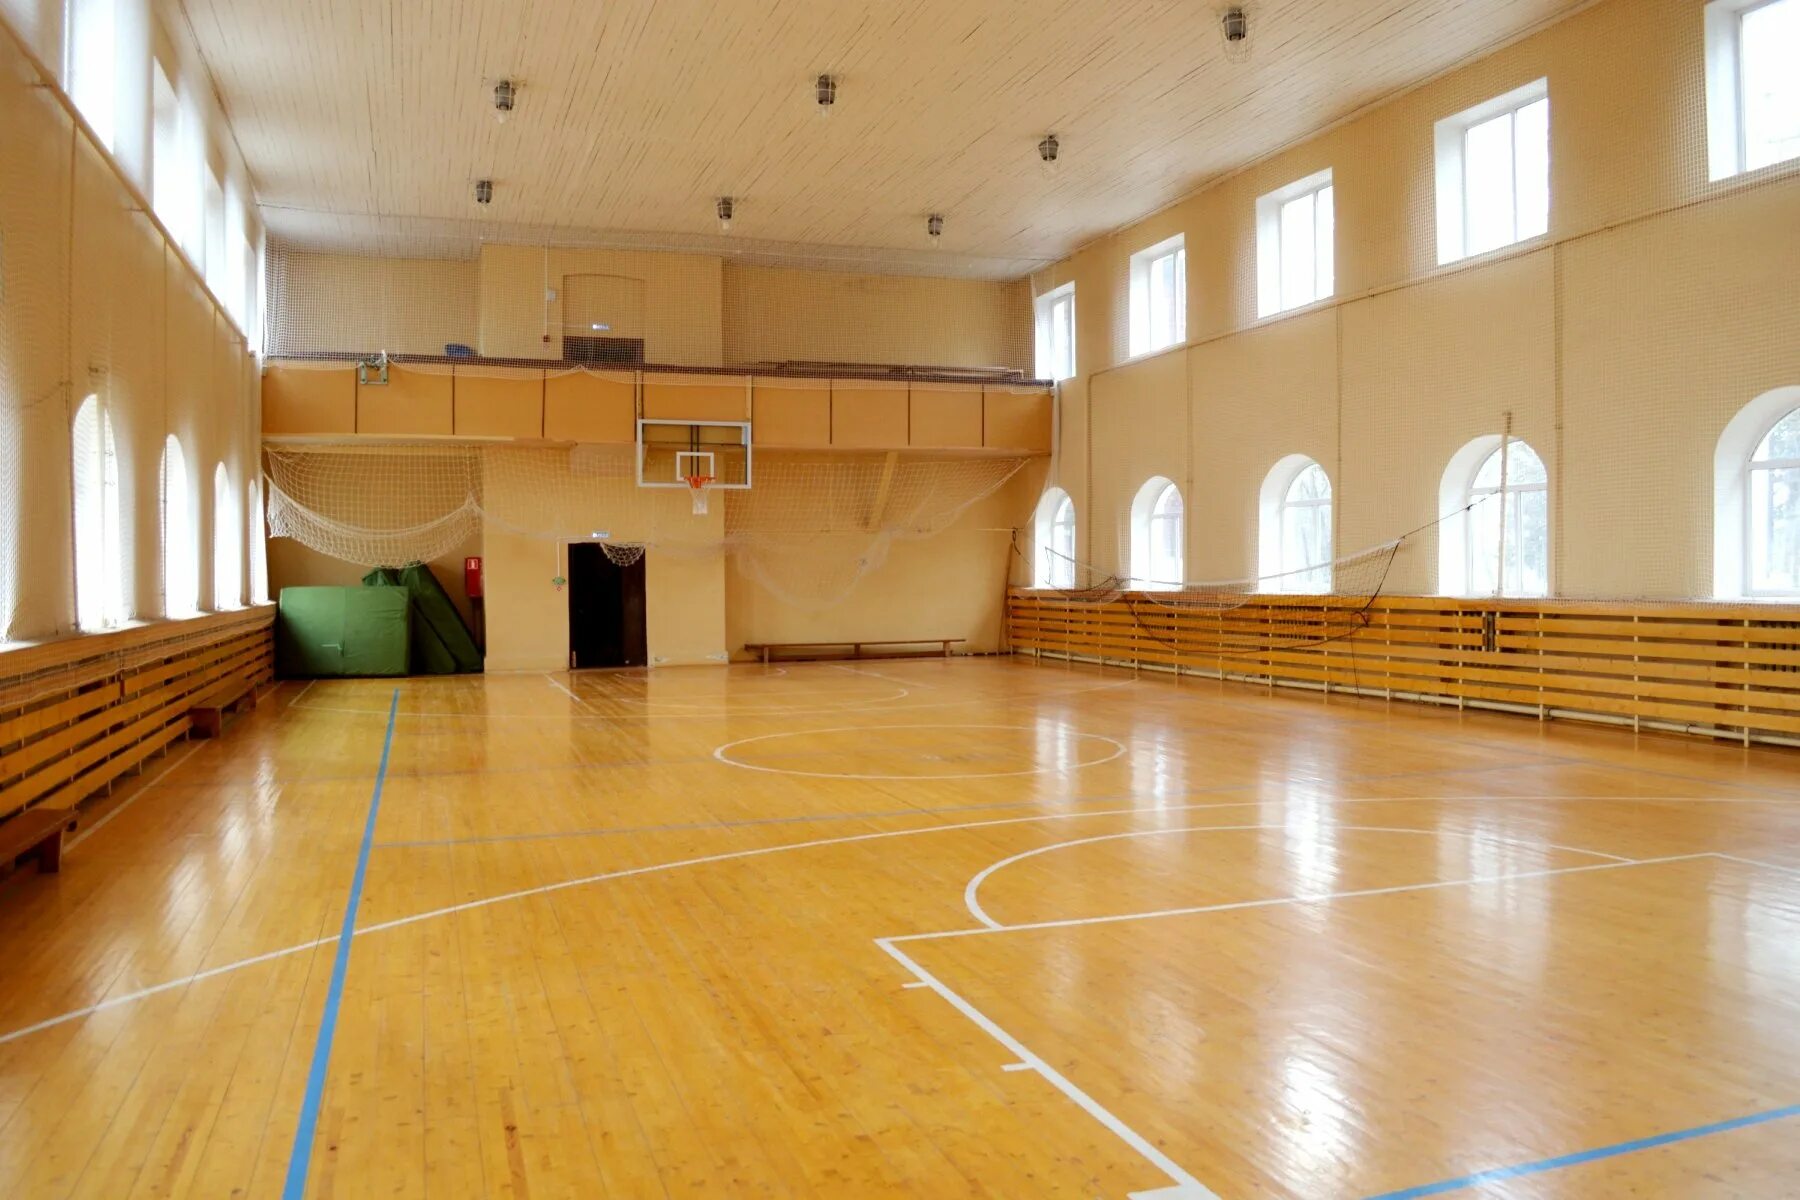 Спорт в большой зал. Спортивный зал. Большой спортивный зал. Современный спортивный зал в школе. Огромный школьный спортзал.